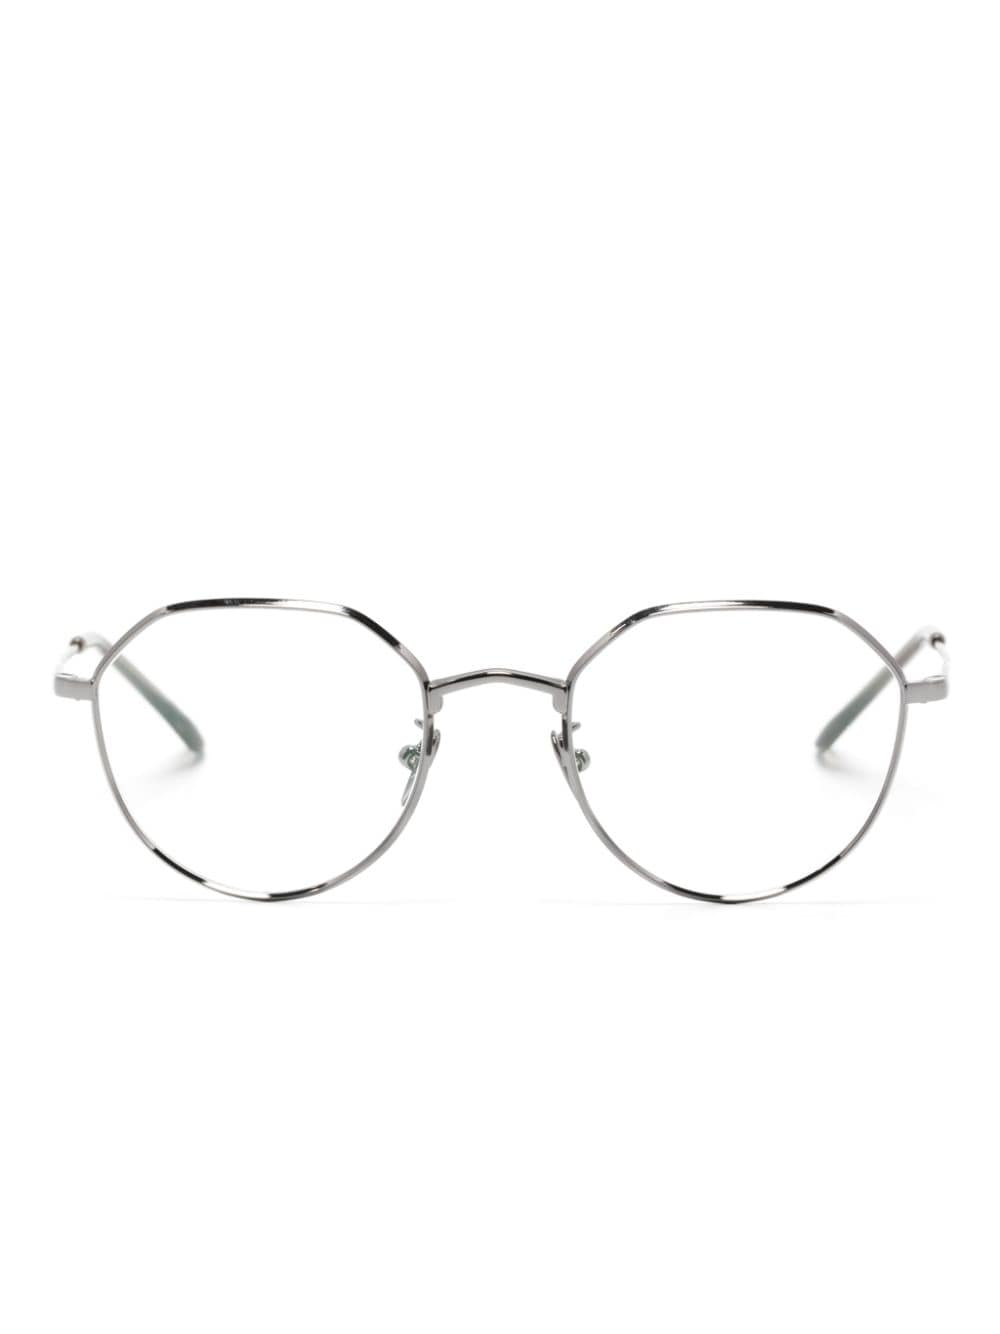 geometric-frame clear-lenses glasses